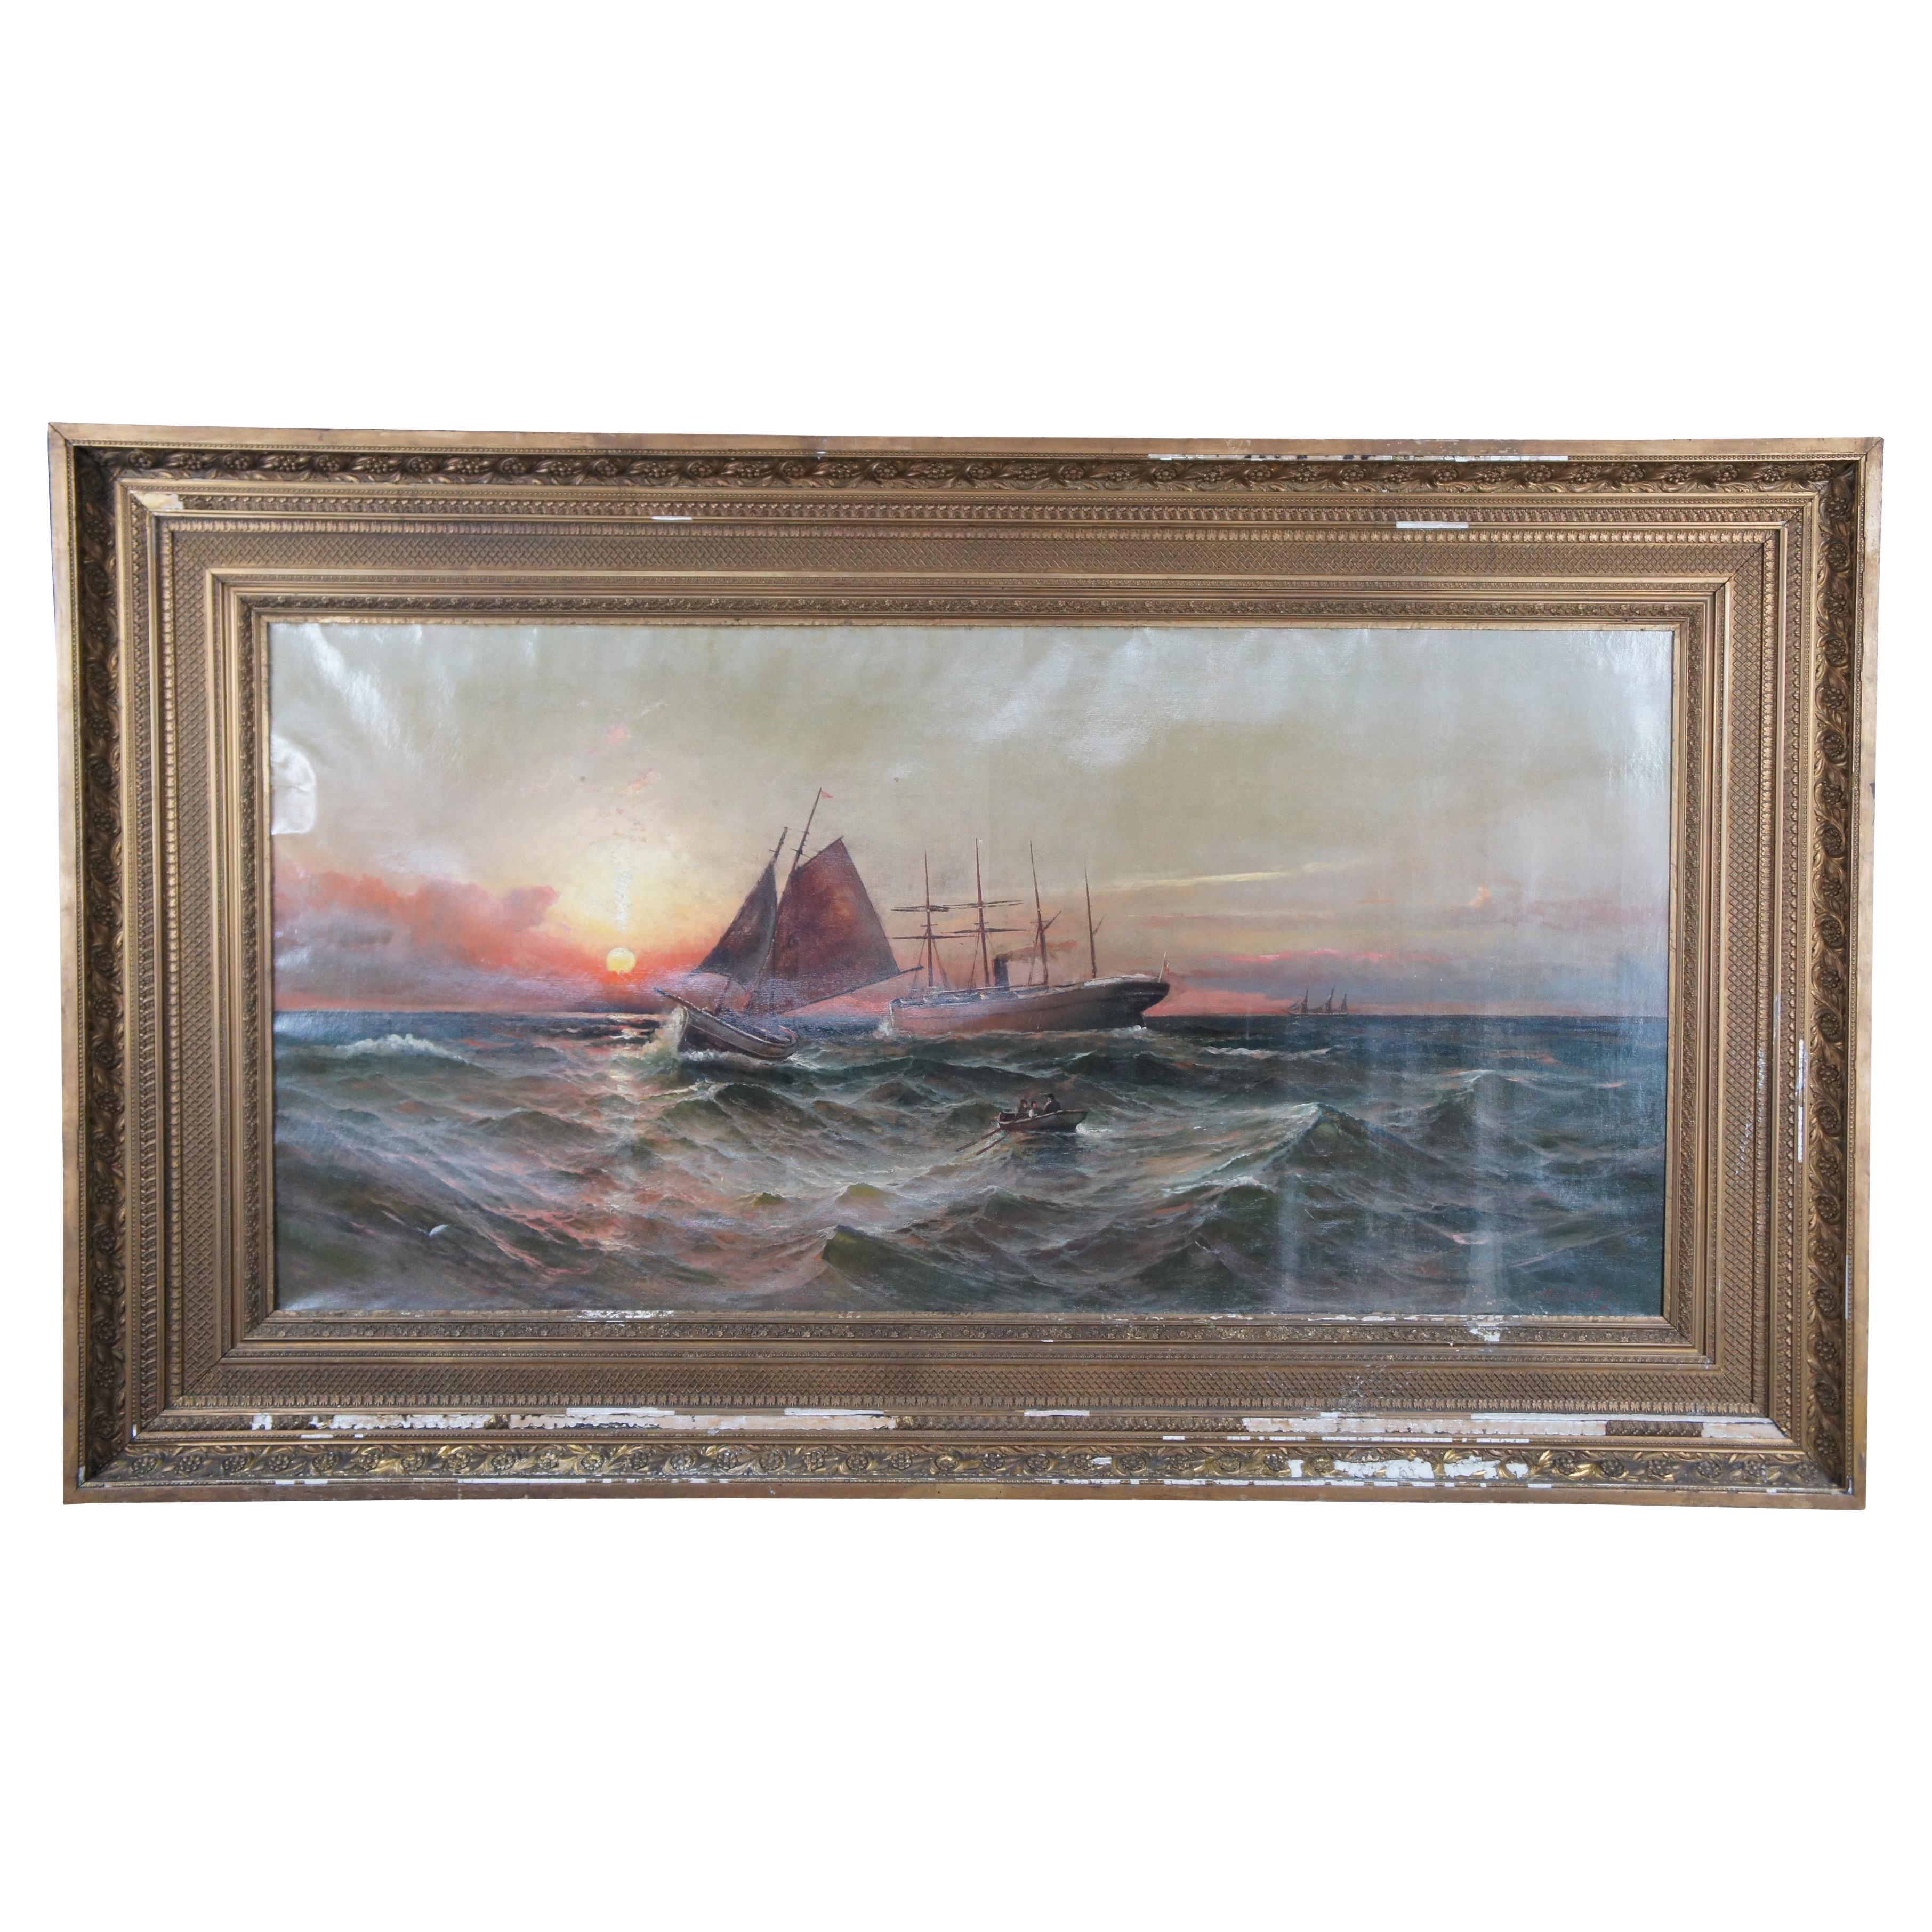 Peinture à l'huile monumentale sur toile de paysage marin BJ Harnett représentant un bateau maritime, 1890